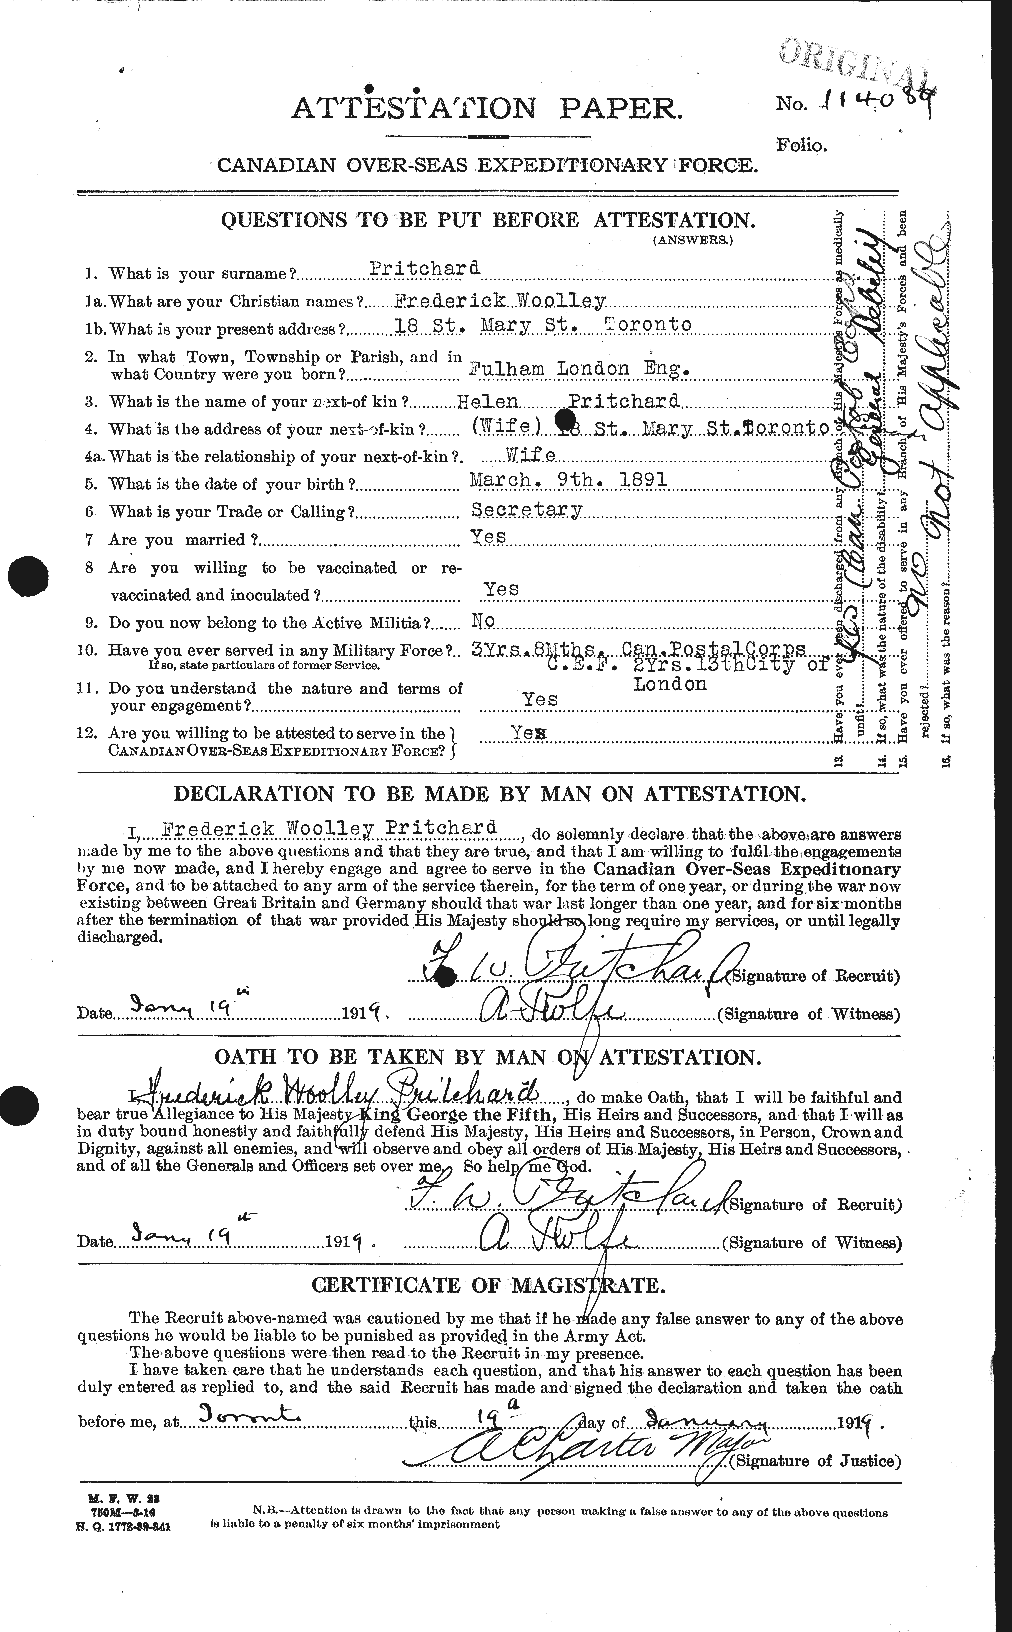 Dossiers du Personnel de la Première Guerre mondiale - CEC 588527a